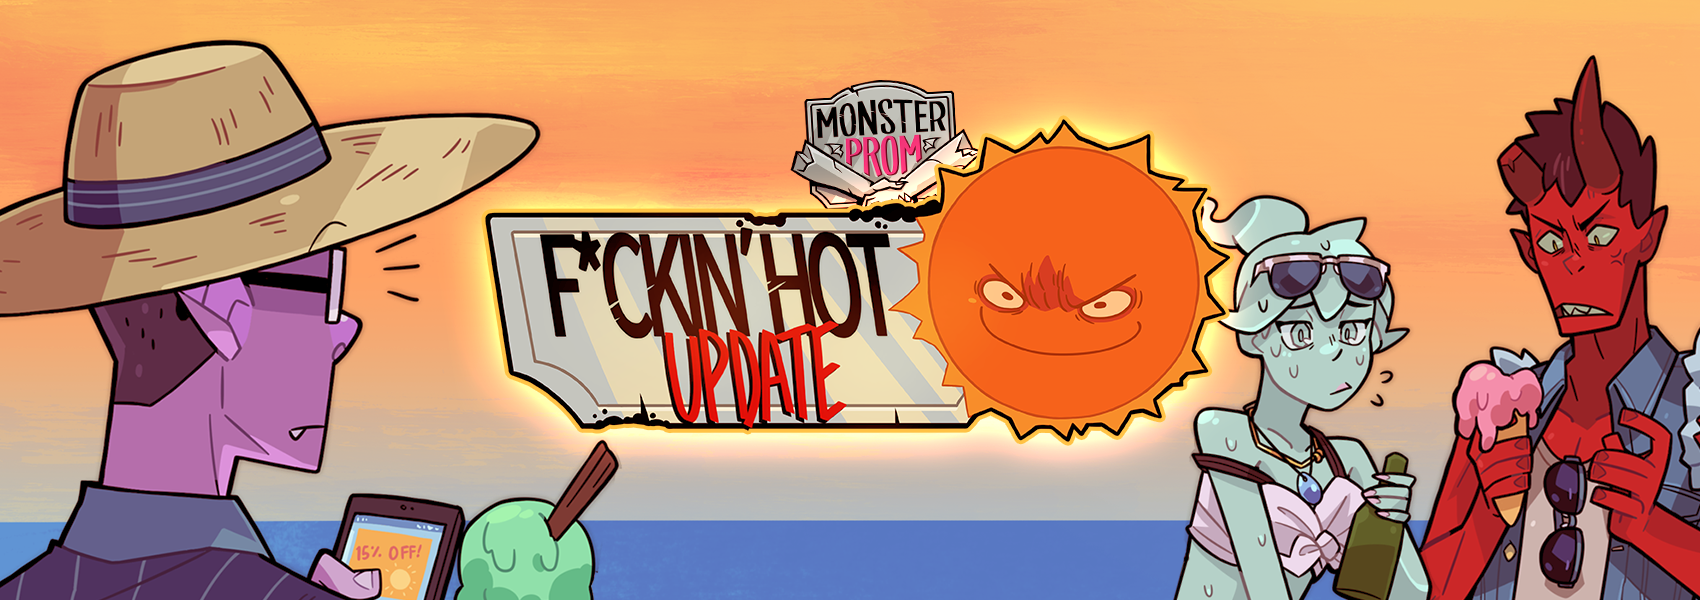 F*ckin' Hot Update